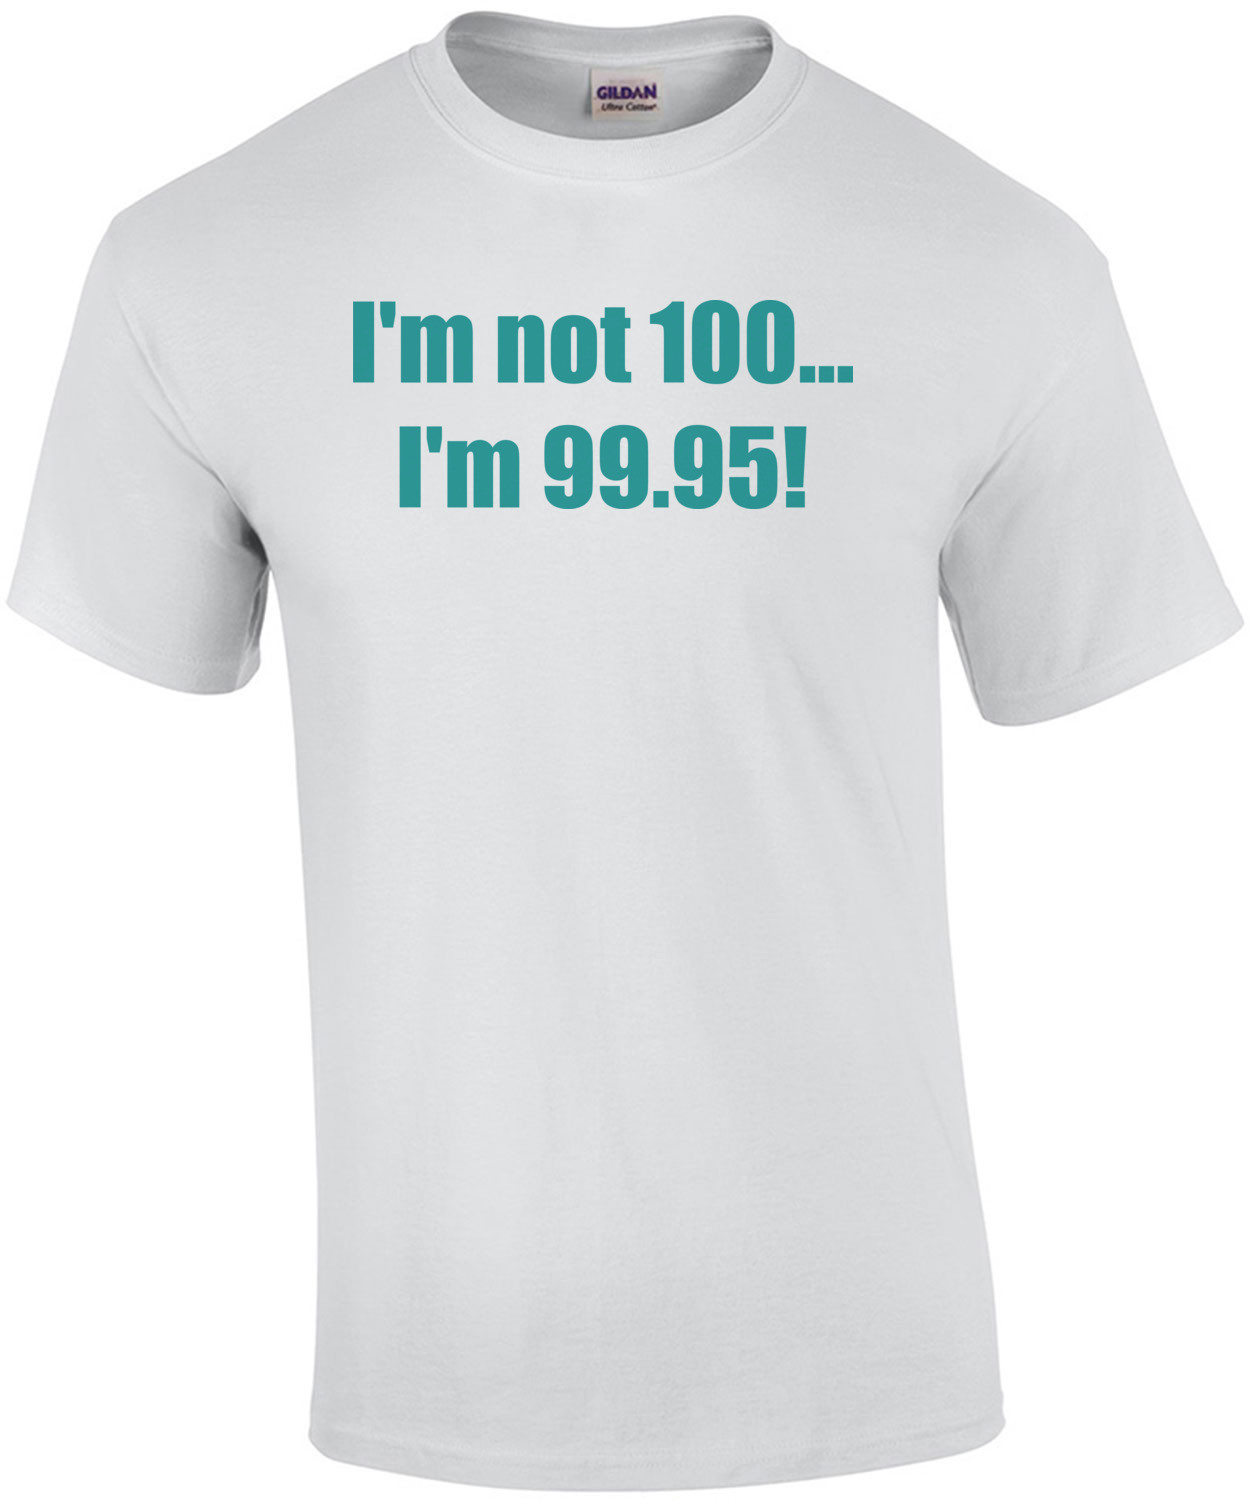 I'm not 100... I'm 99.95! 100th birthday Shirt